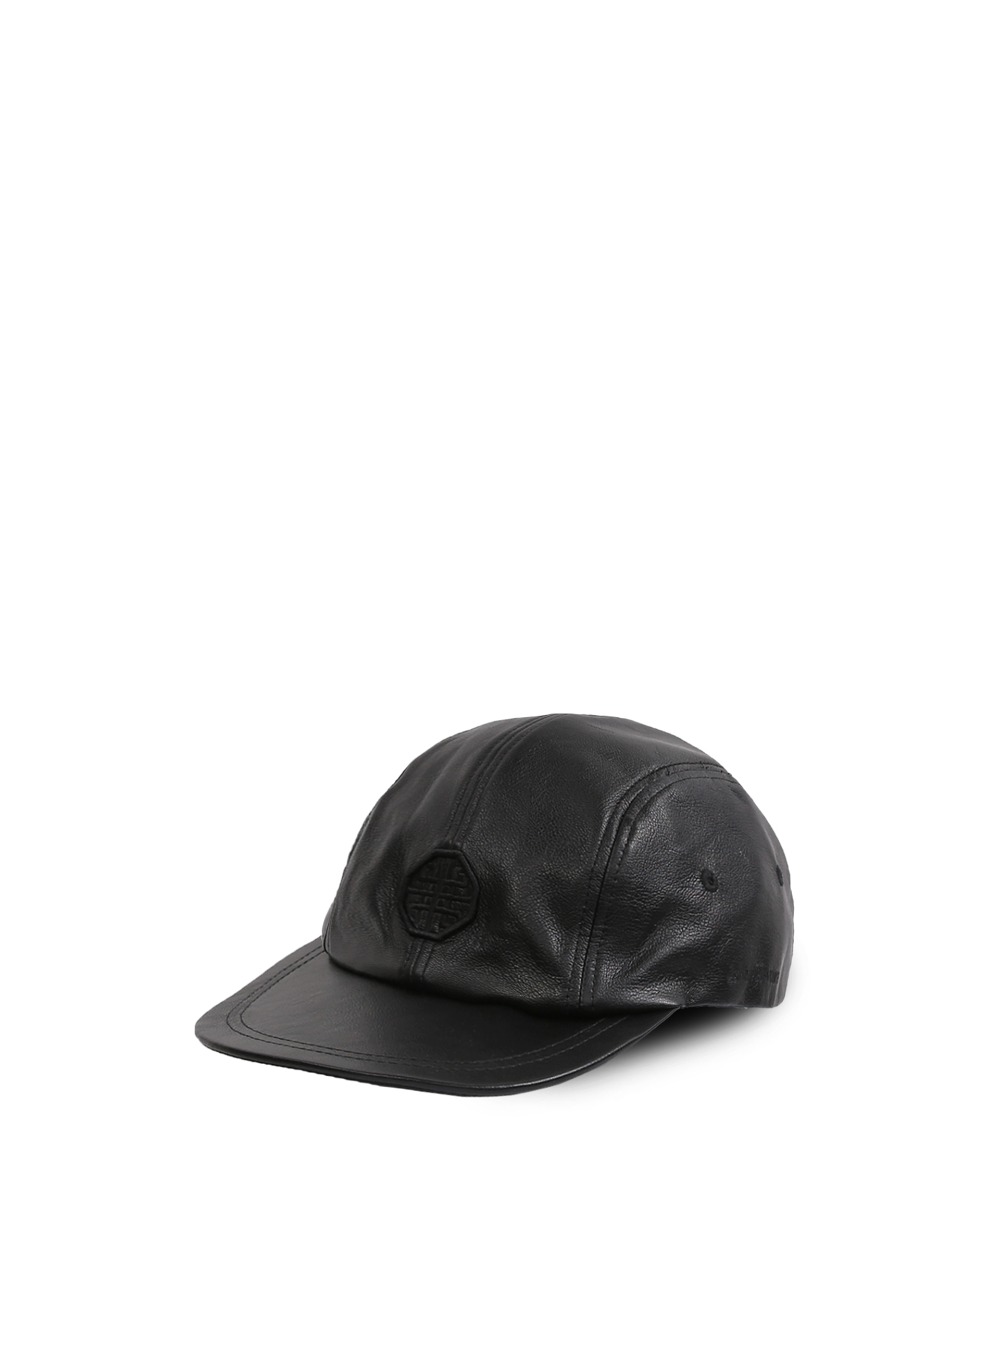 Leather Camp Cap - Black